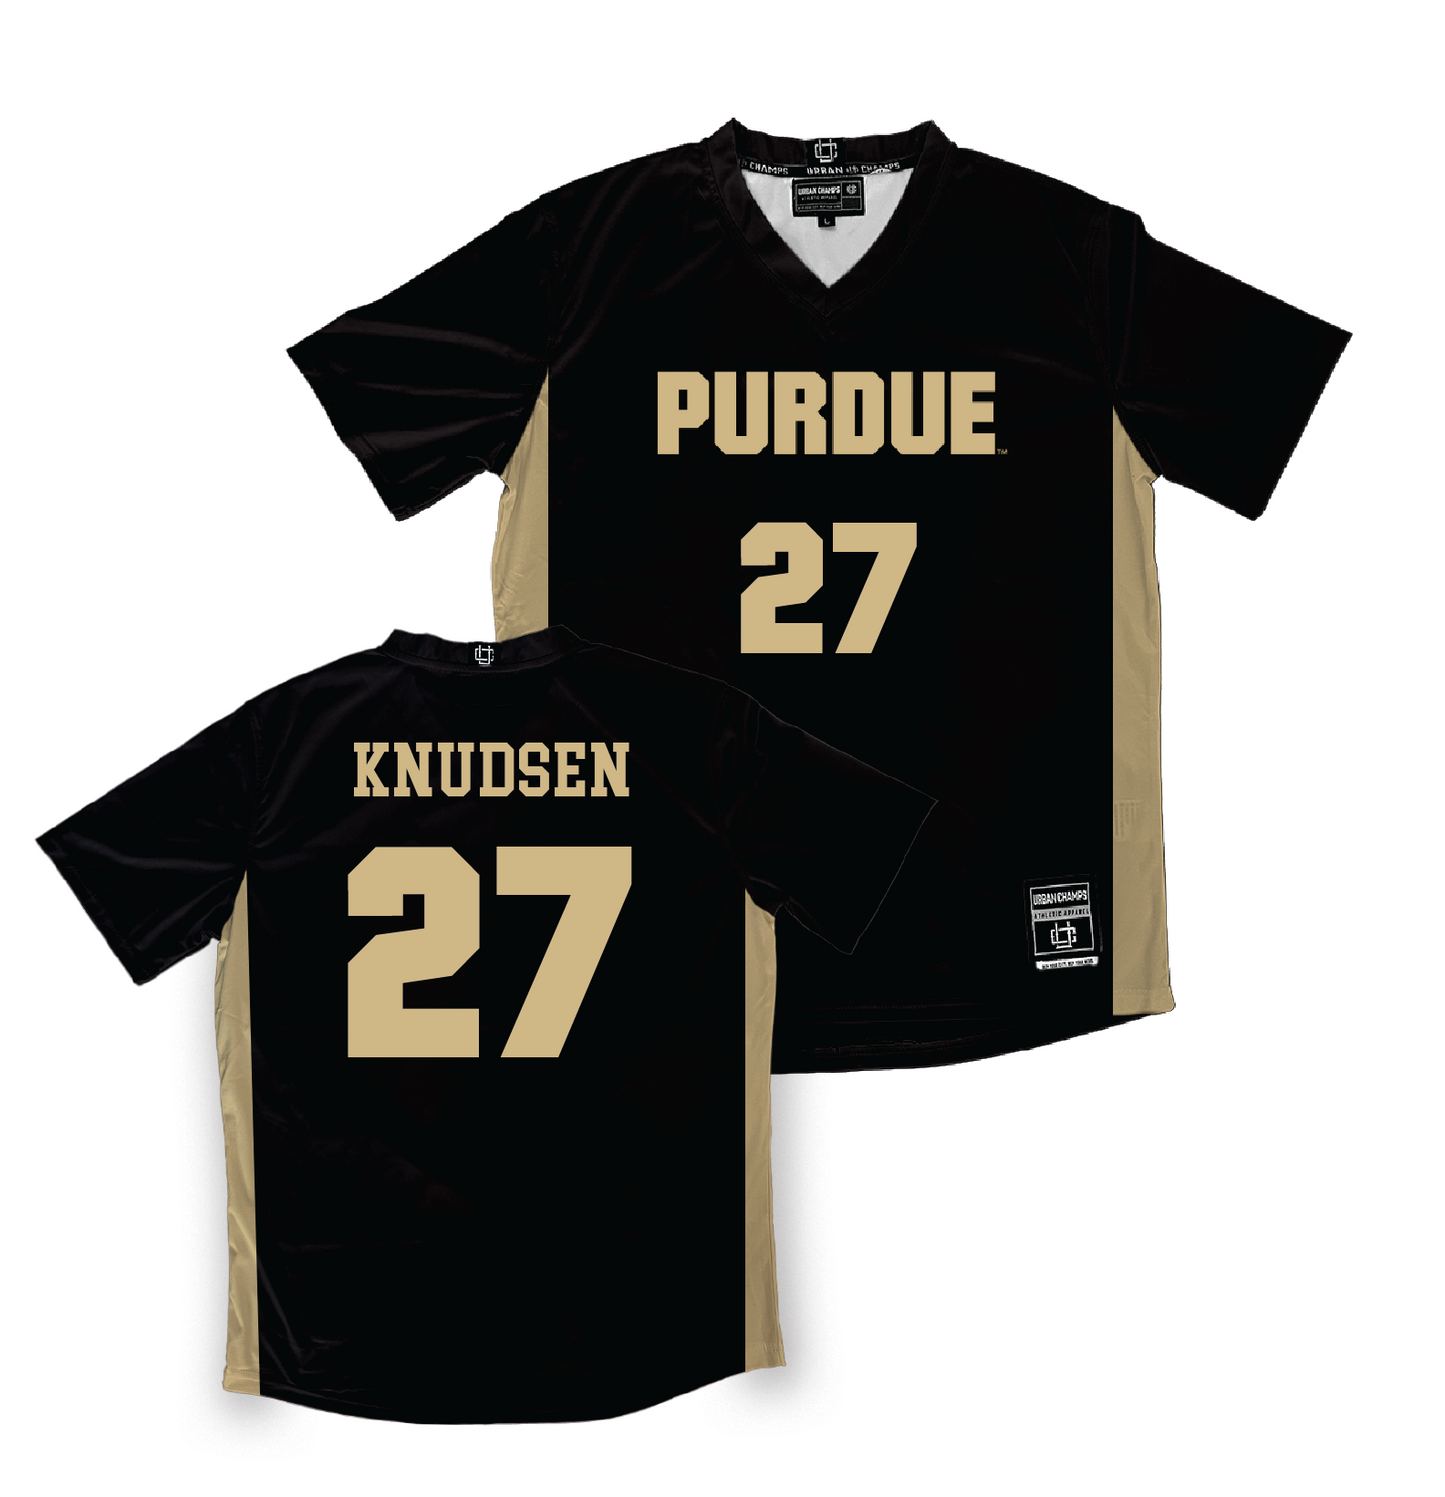 Purdue Women's Soccer Black Jersey - Riley Knudsen | #27